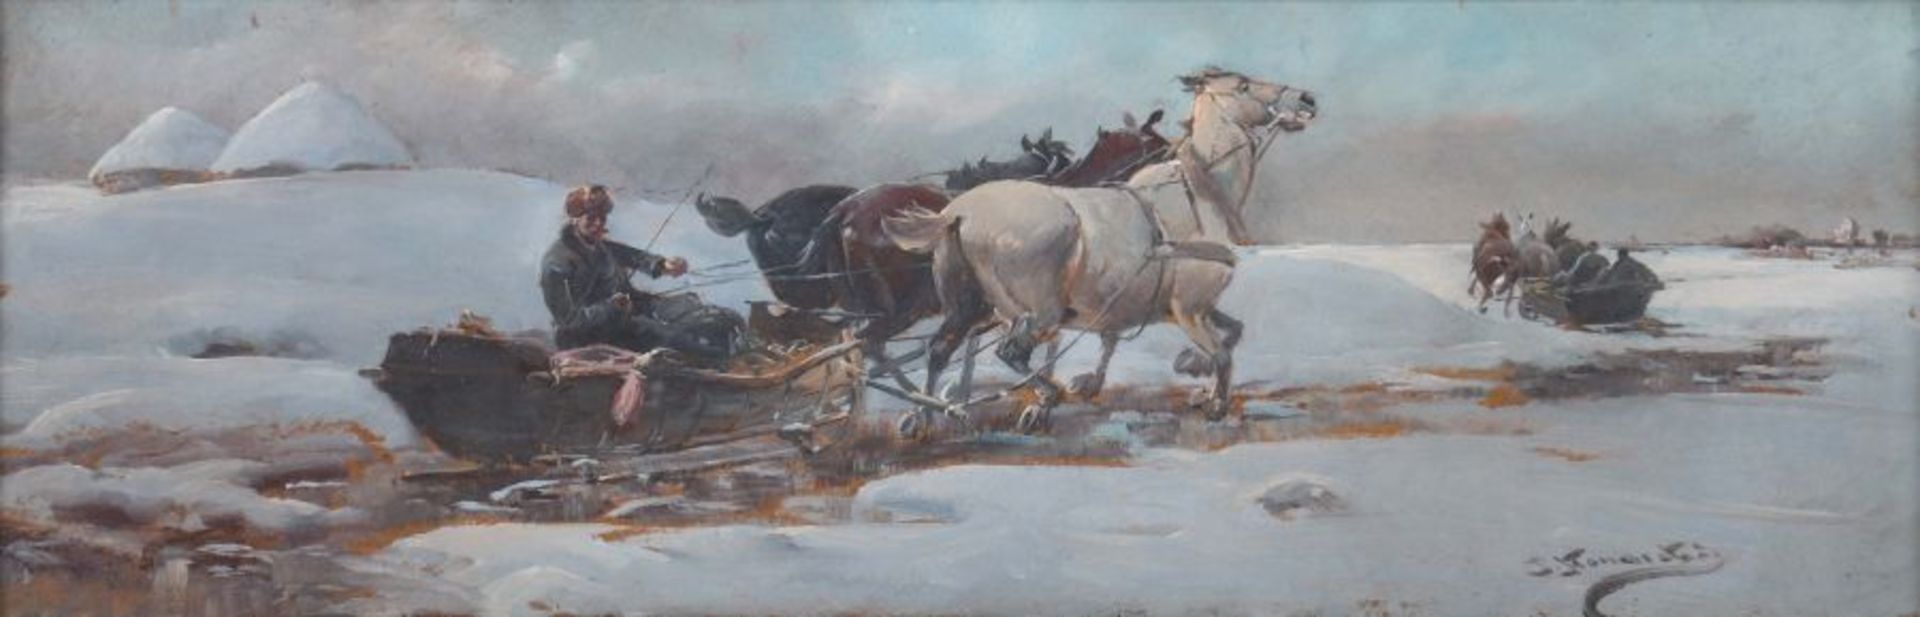 Konarski, Jan eigtl. Alfred von Wierusz-Kowalski, Suwalki 1850 - 1918 München, polnischer Maler. "